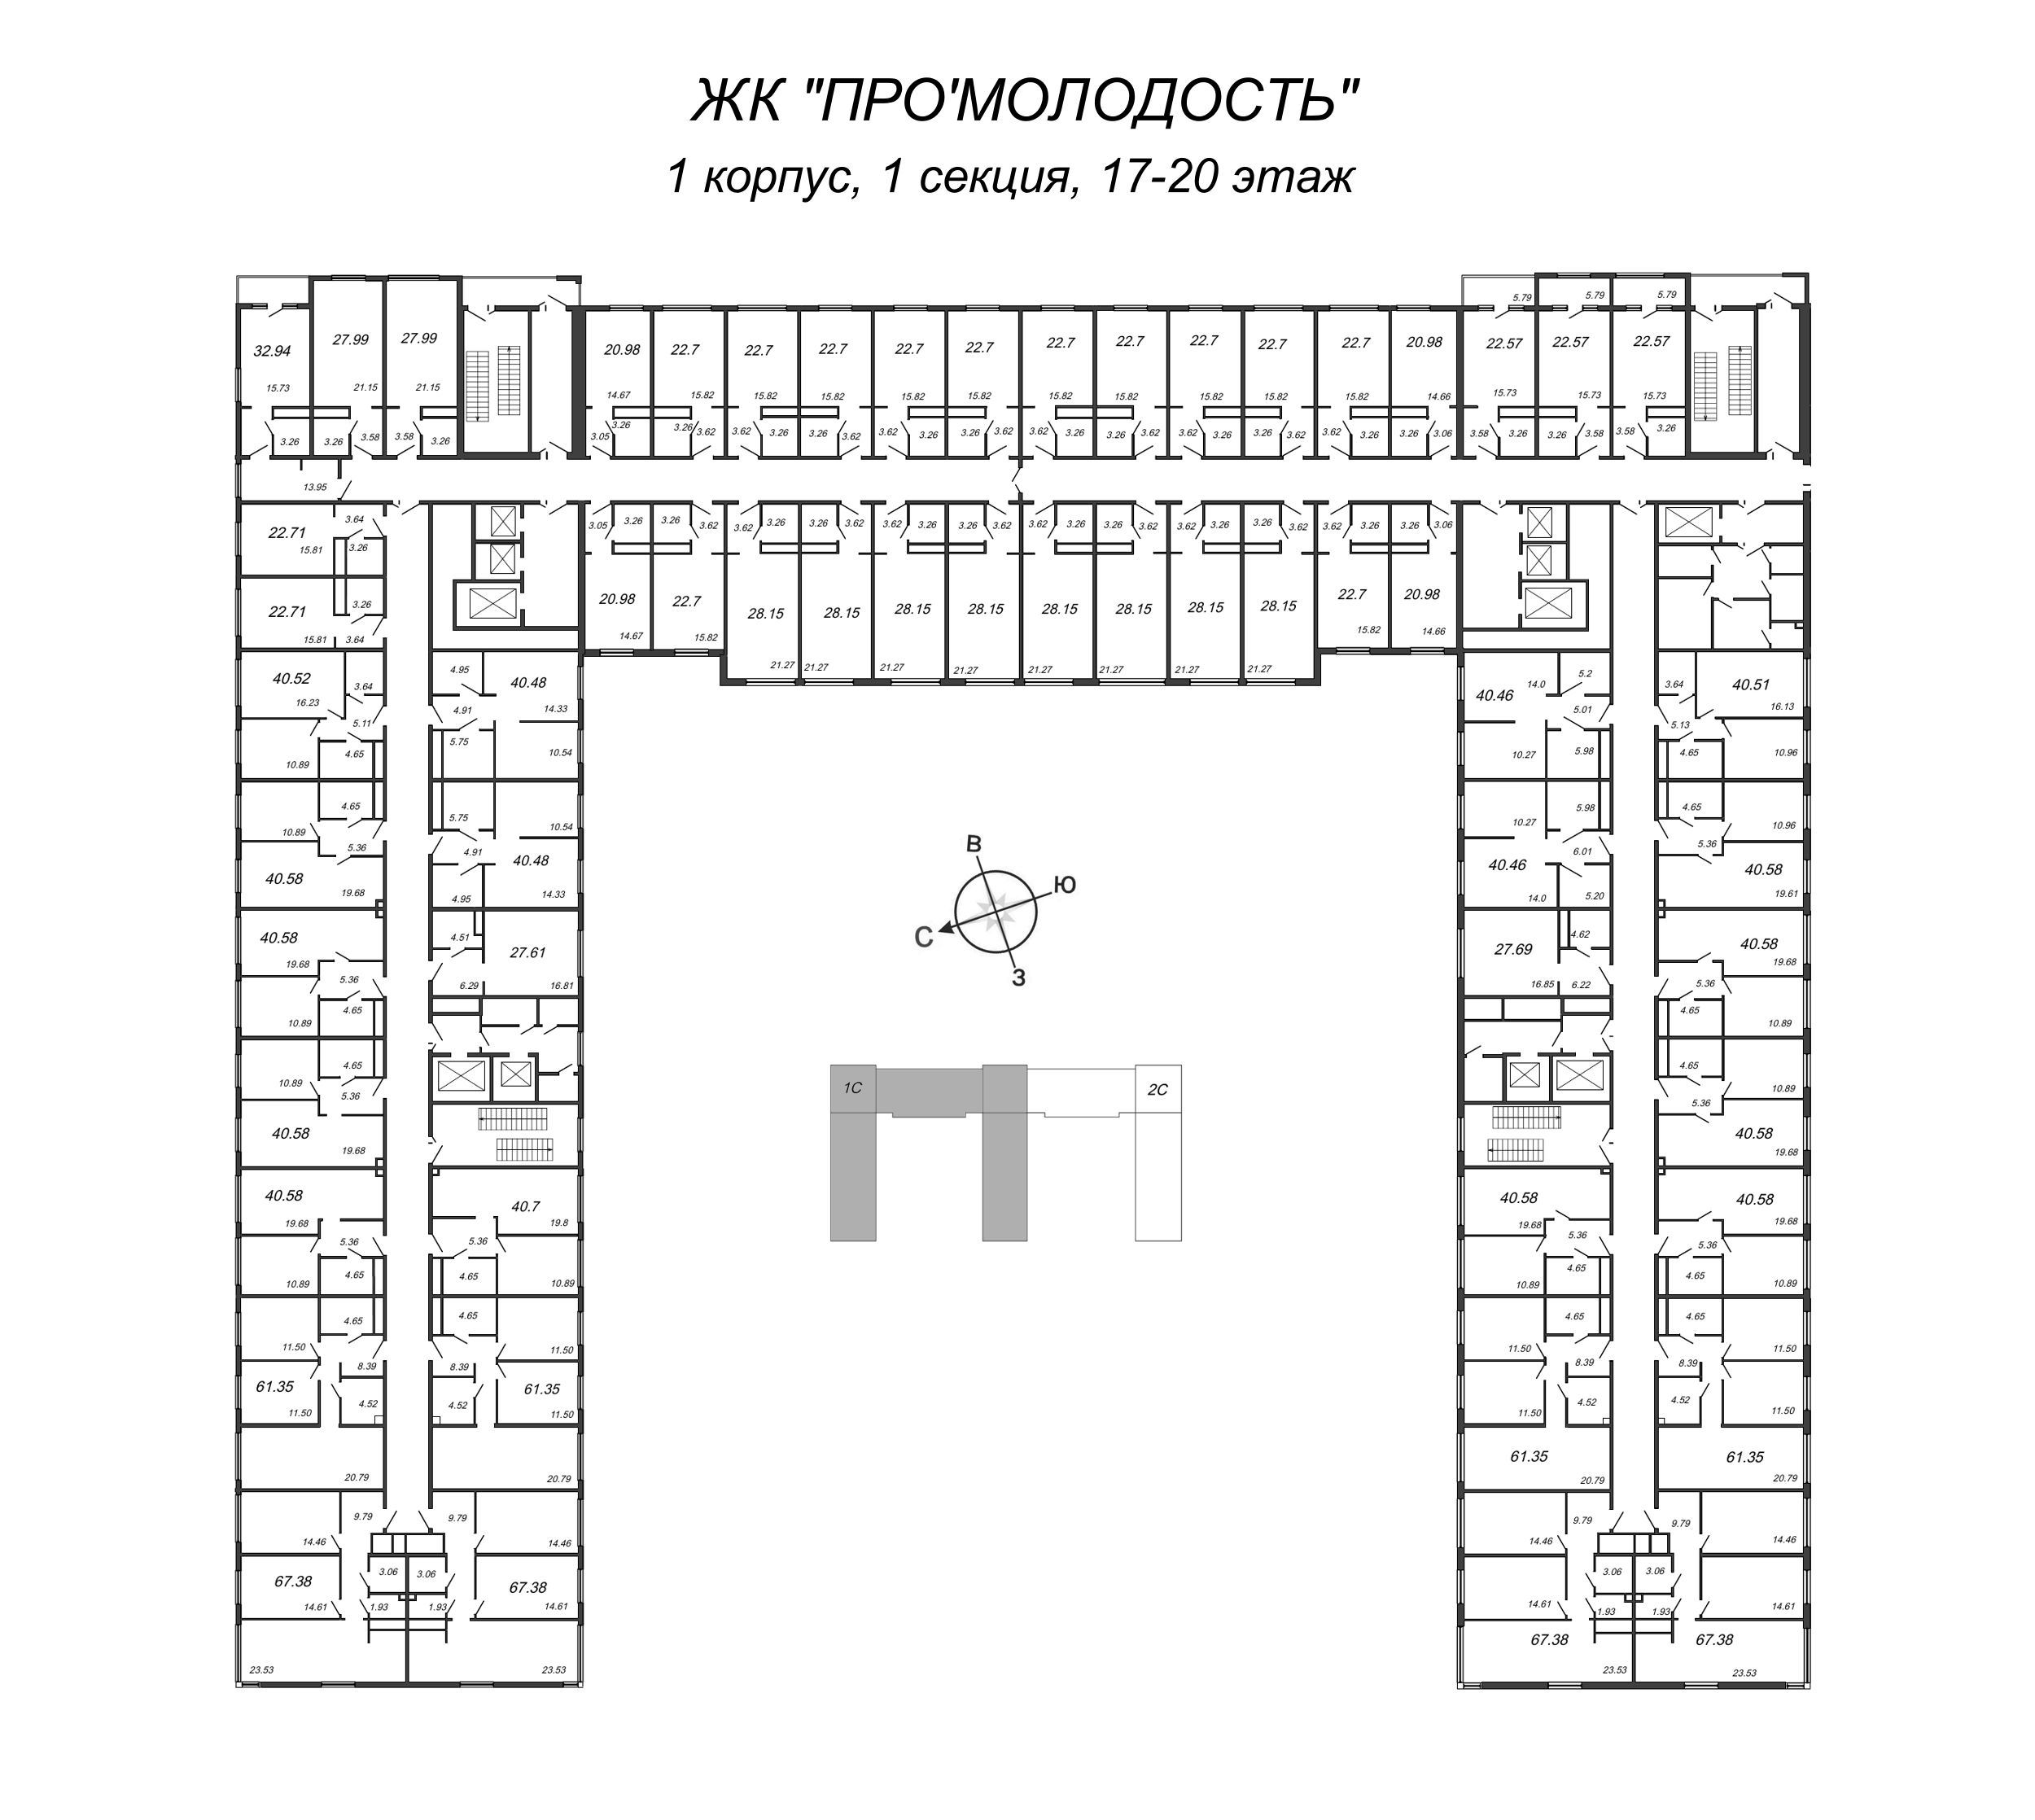 1-комнатная квартира, 40.48 м² в ЖК "ПРО'МОЛОDОСТЬ" - планировка этажа